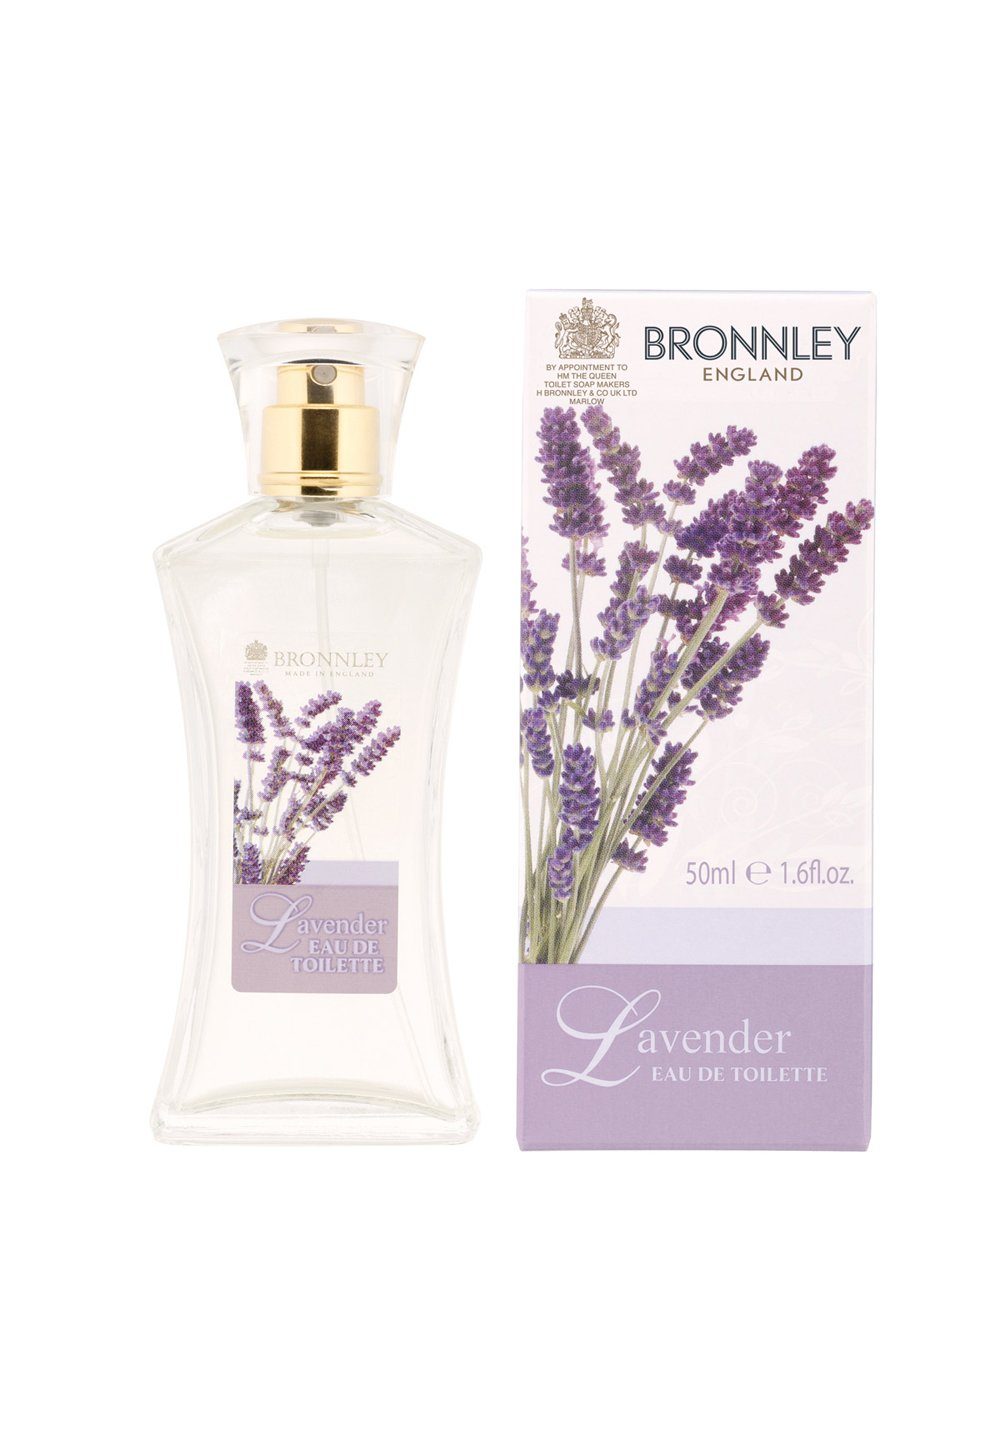 Bronnley 52545 Eau Lavender, de de Toilette Toilette 50ml Eau